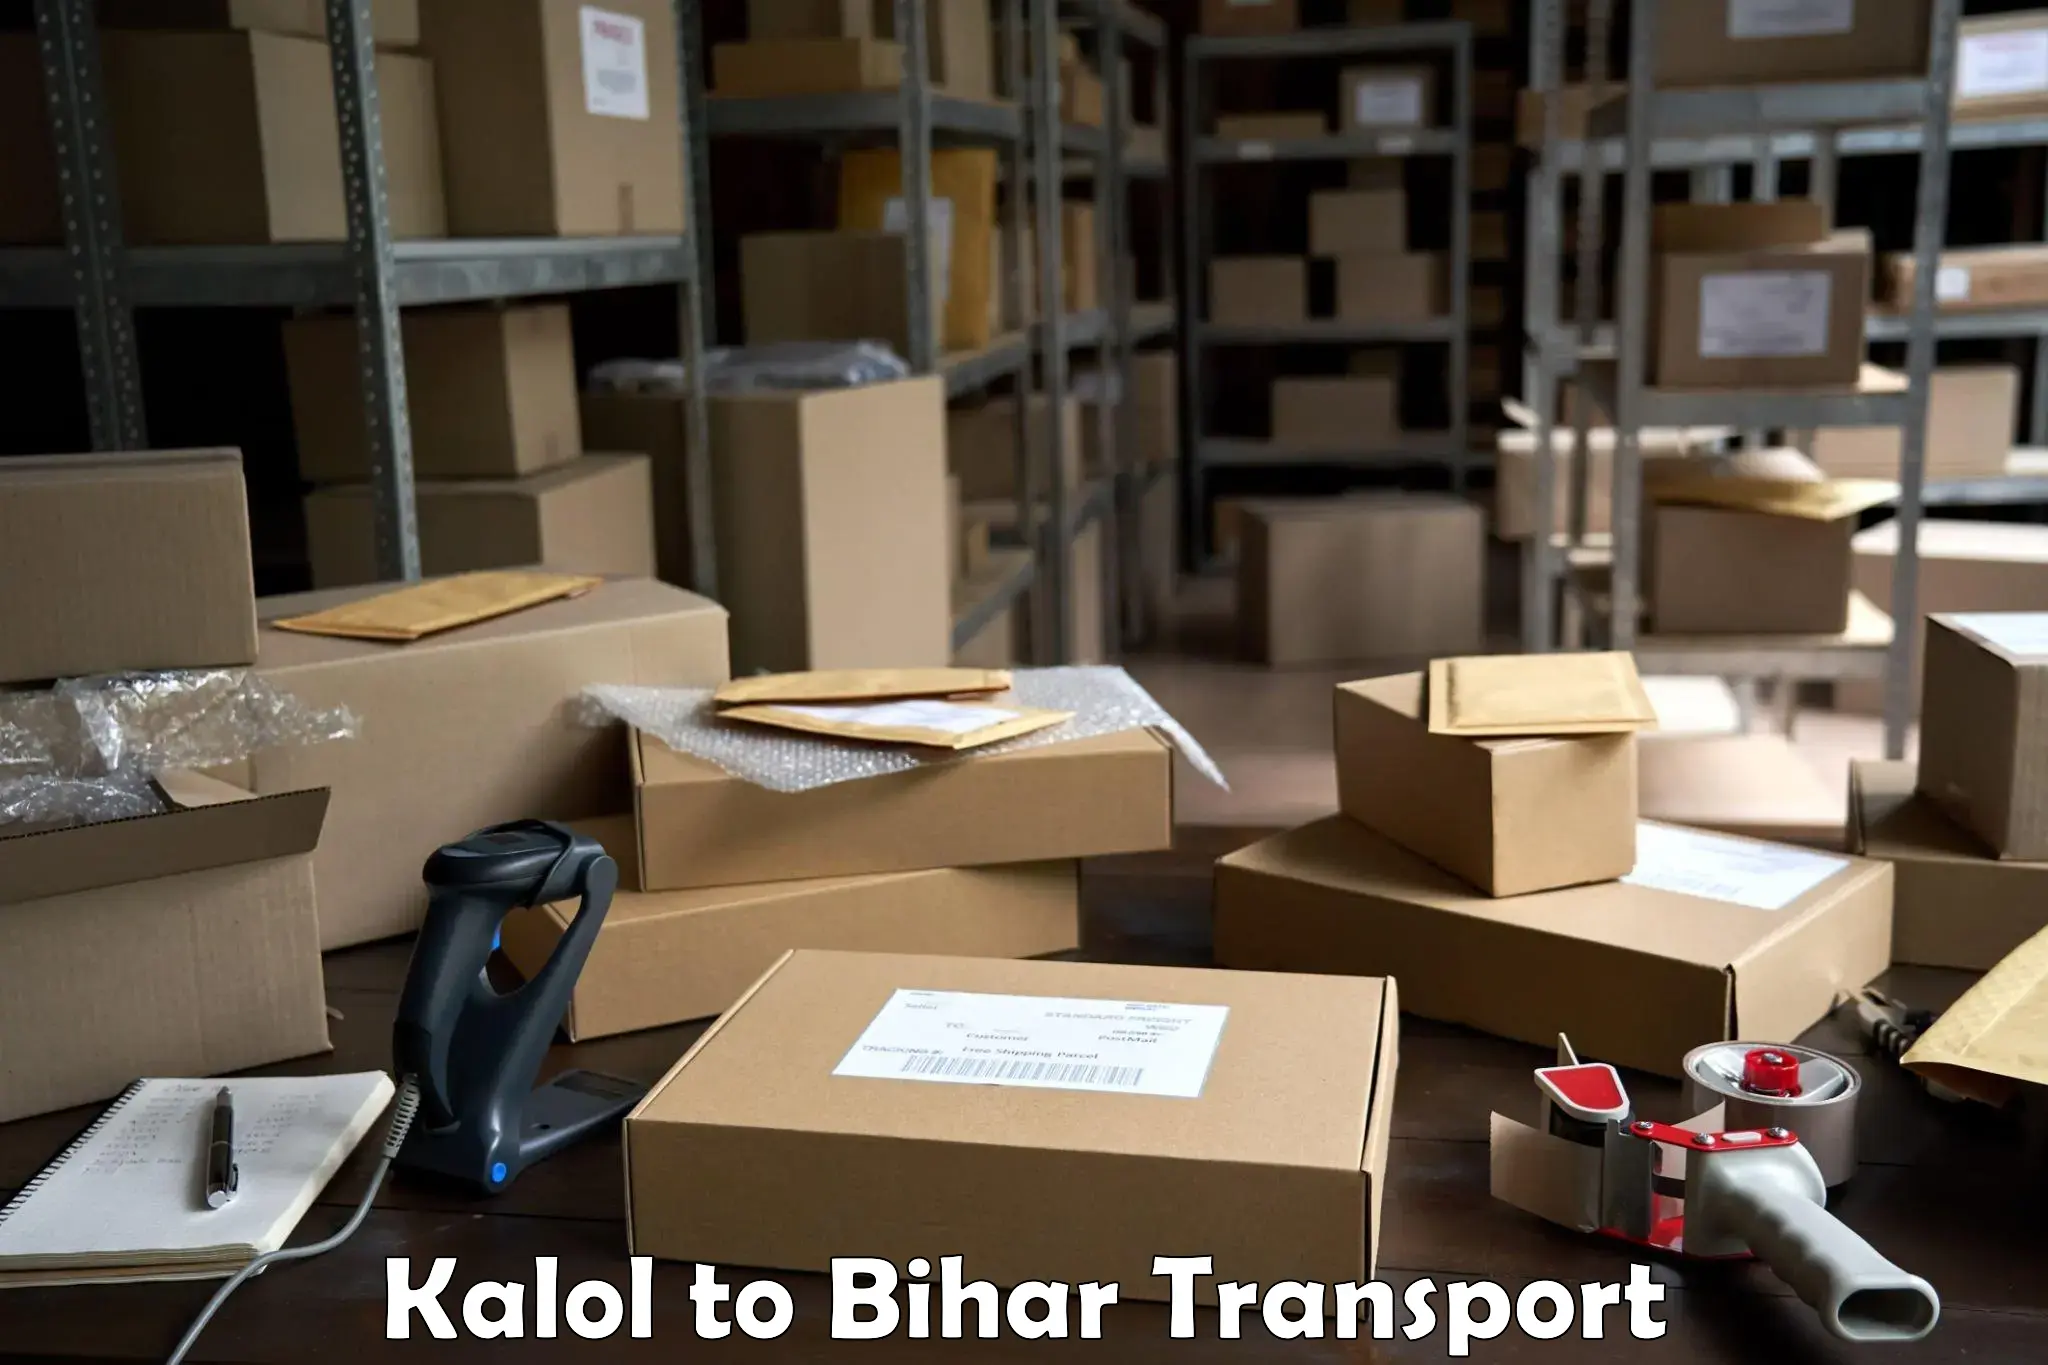 Shipping partner Kalol to Baniapur